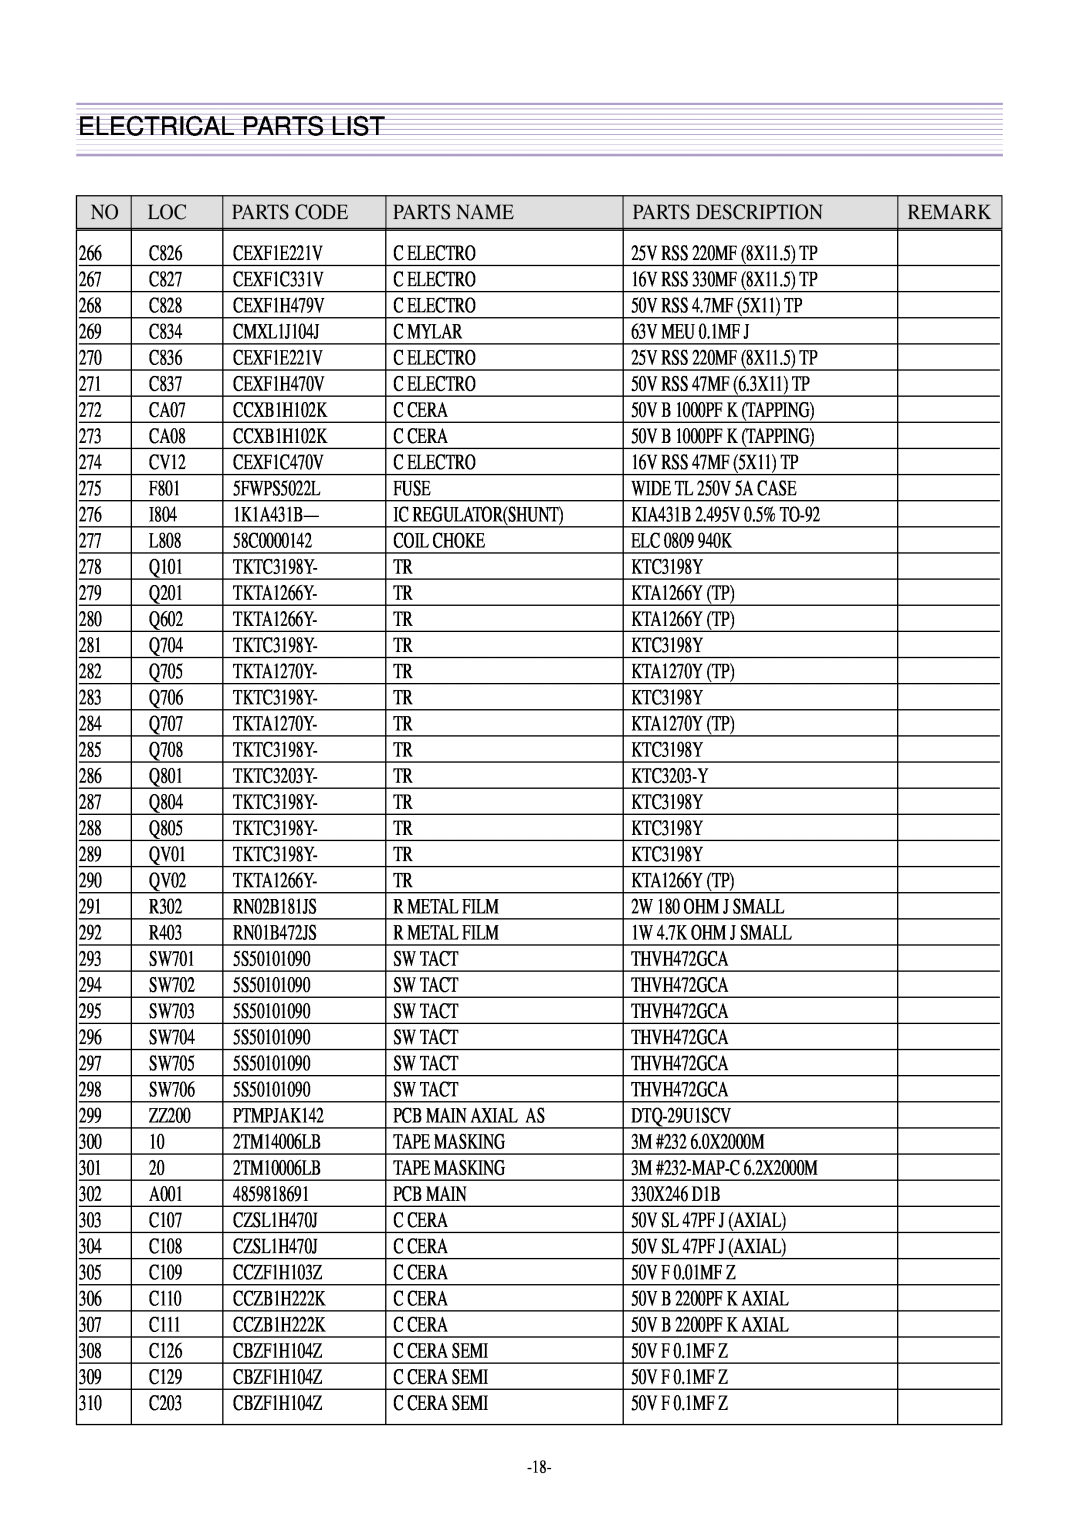 Daewoo CN-400FN DTQ-29U1SCV DTQ-29U1SSFV DTQ-29U1SCSV, DTQ-29U4SCV, DTQ-29U5SSFV, CN-401FN Electrical Parts List 